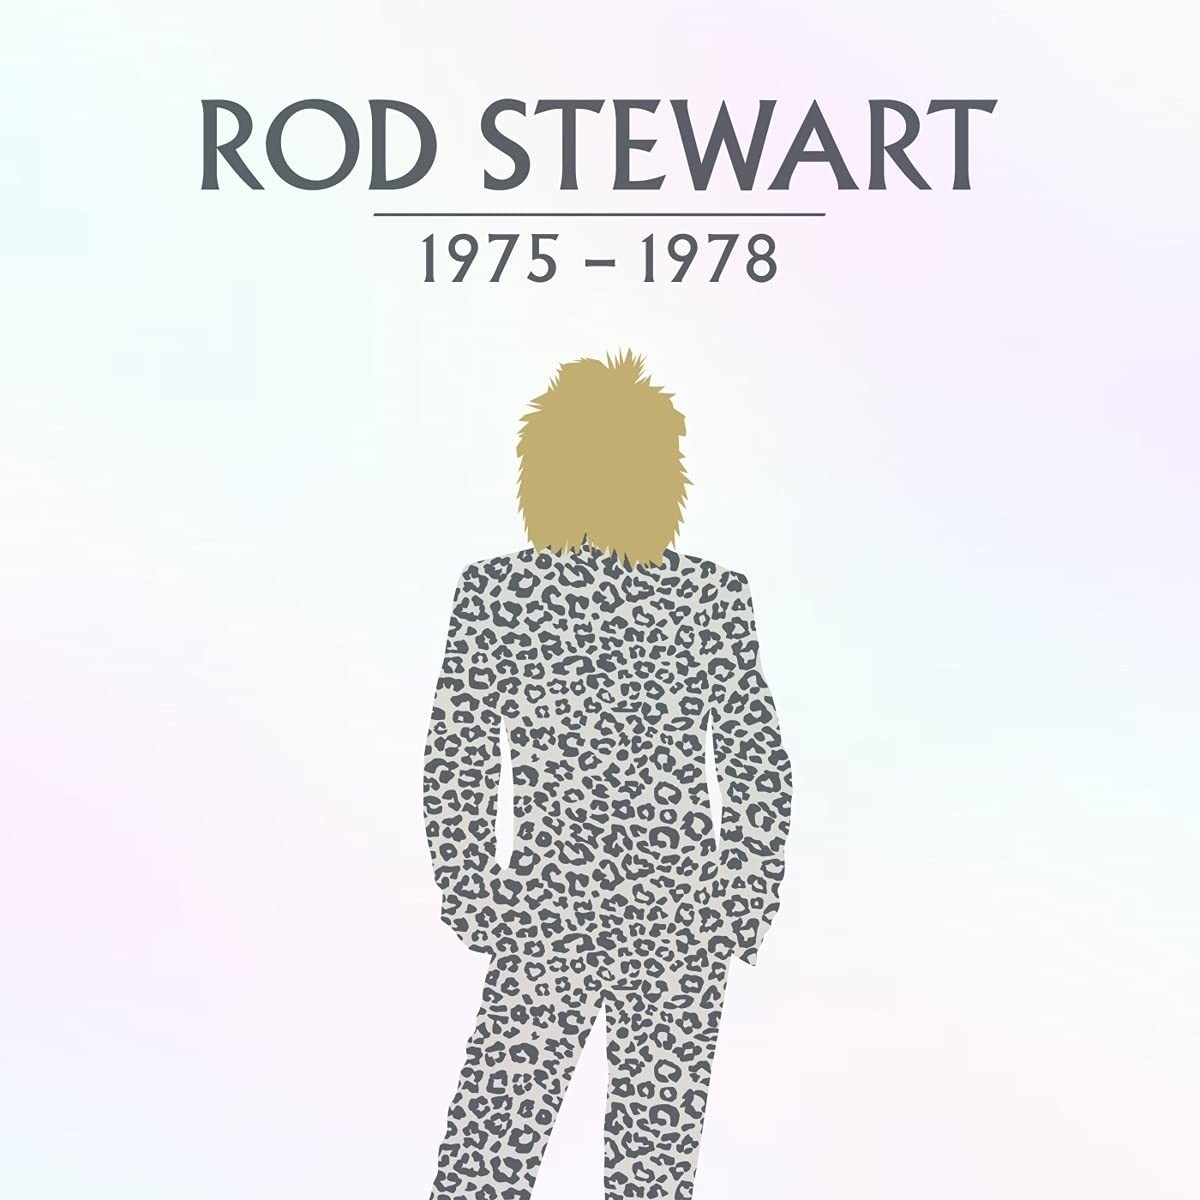 ROD STEWART – ROD STEWART 1975-1978 – America Dvd